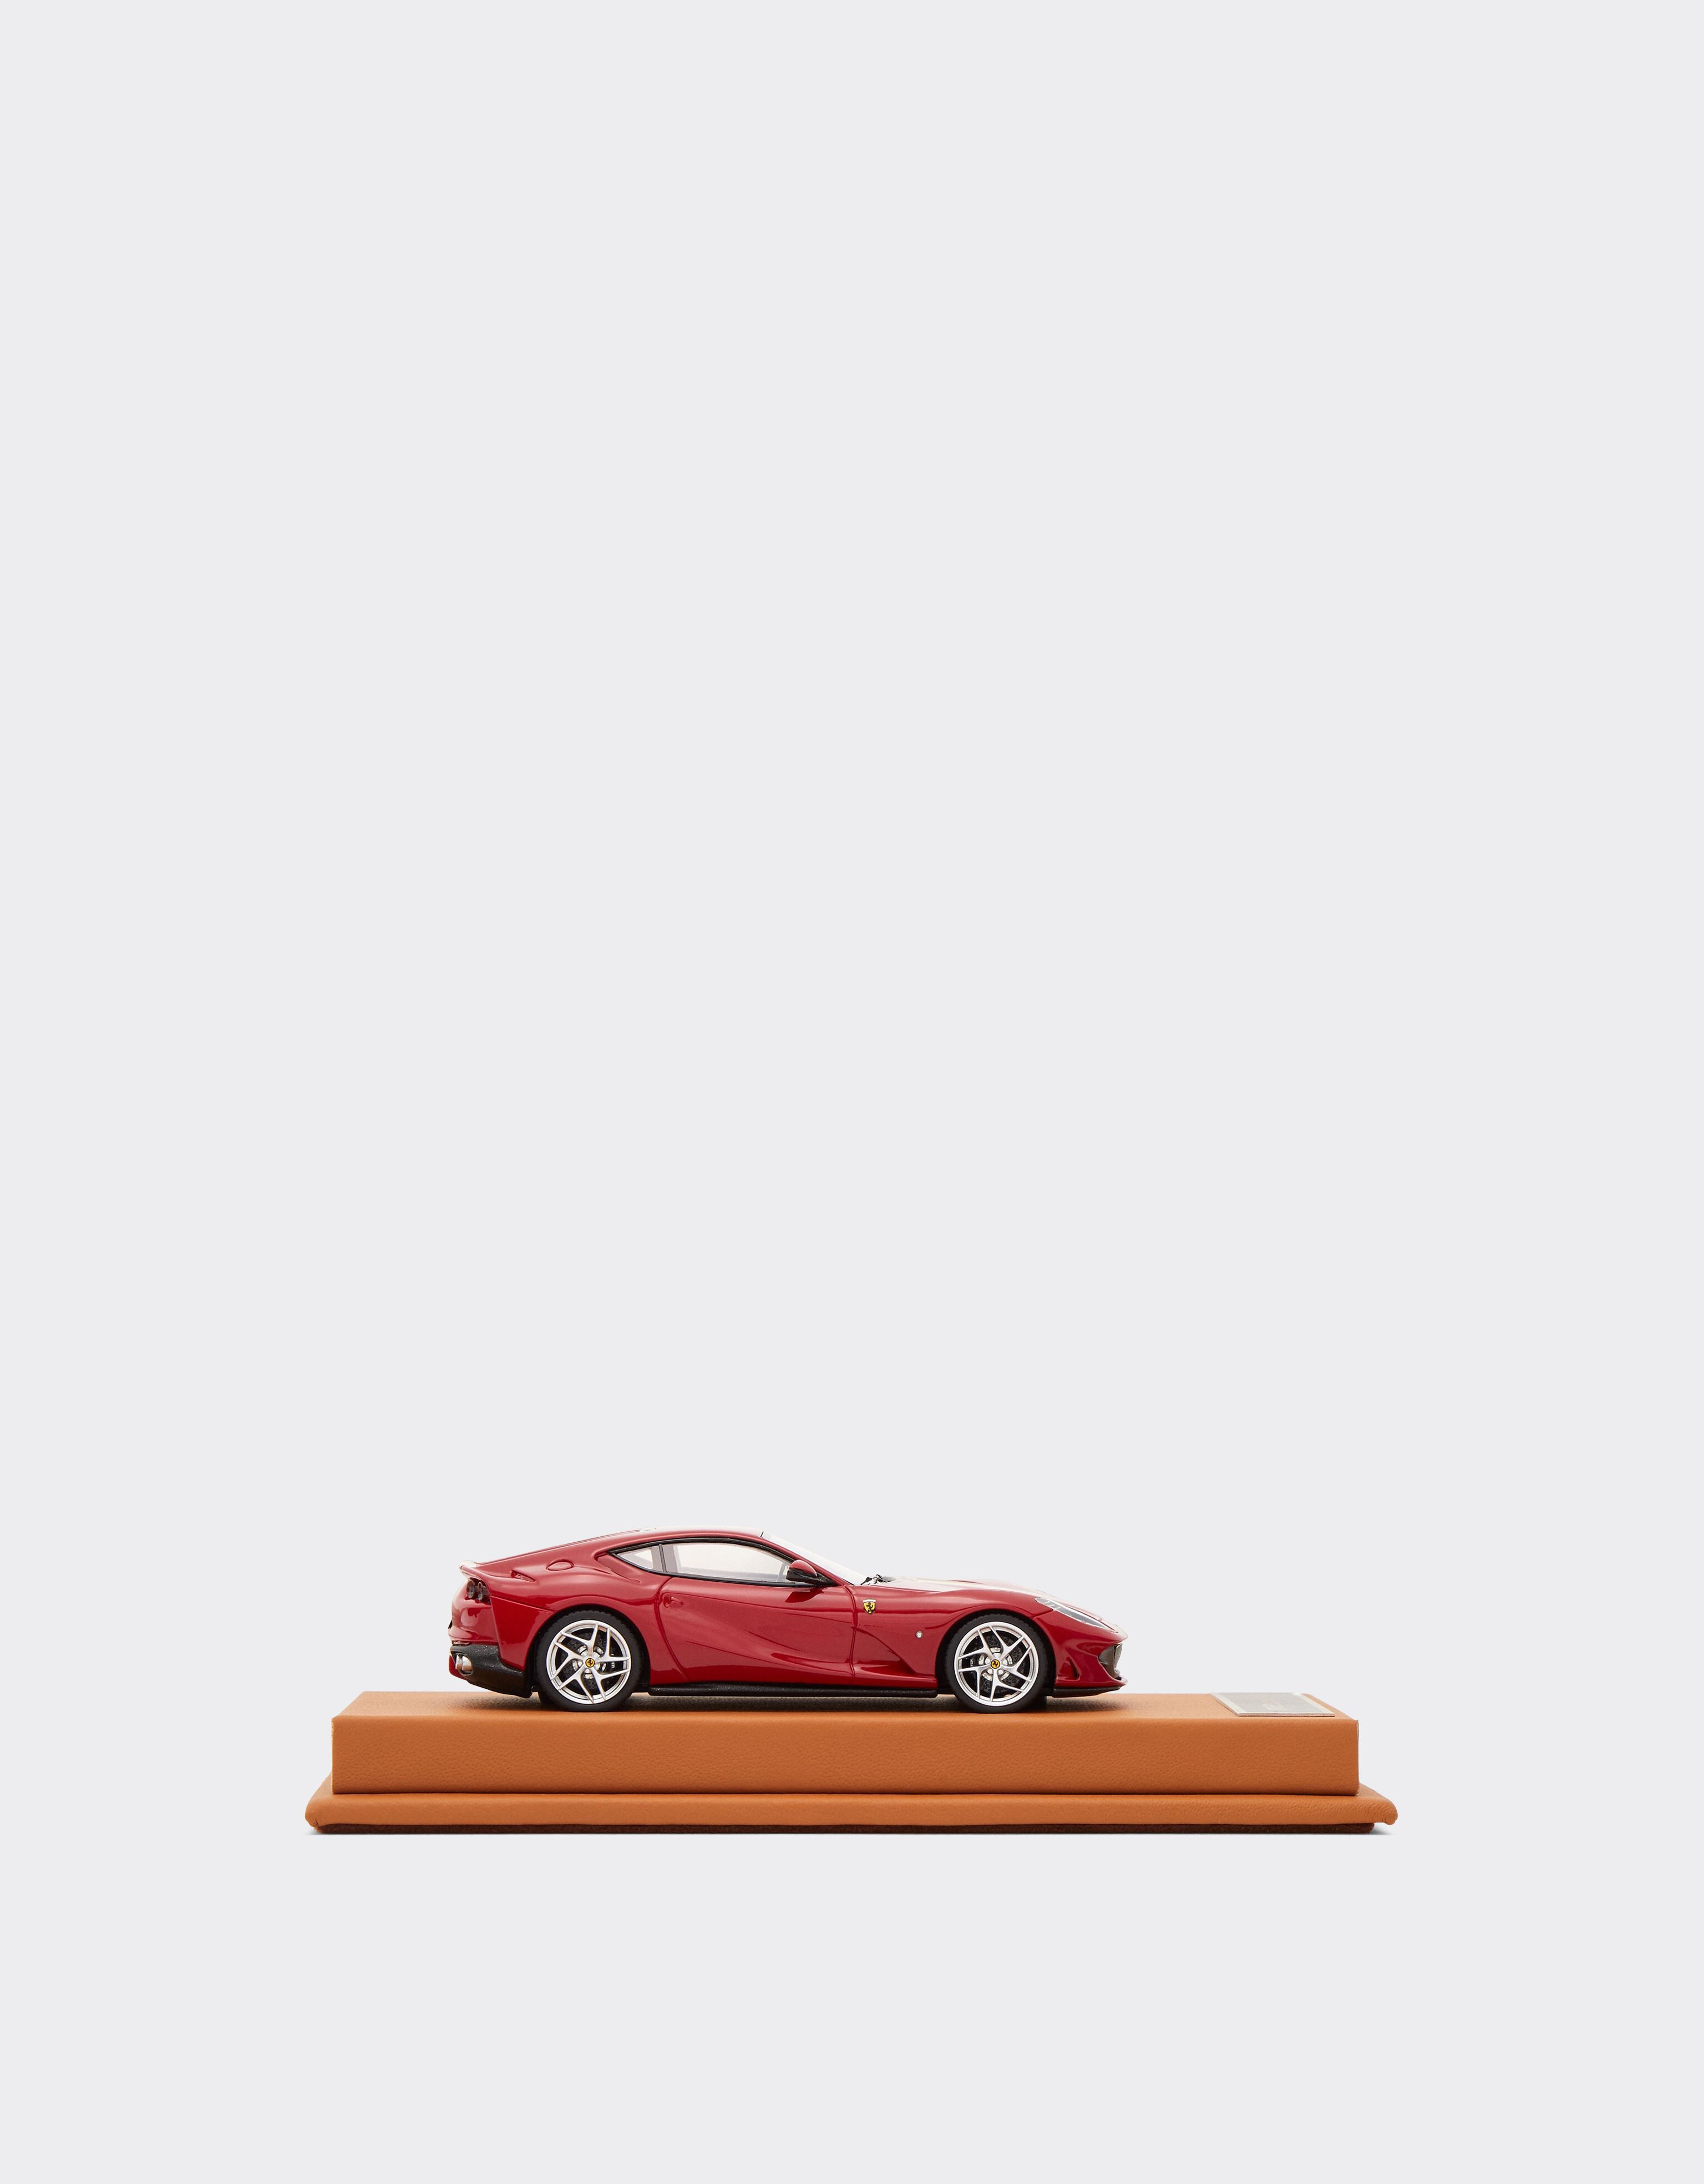 Ferrari Modellauto Ferrari 812 Superfast im Maßstab 1:43 Rot F0570f